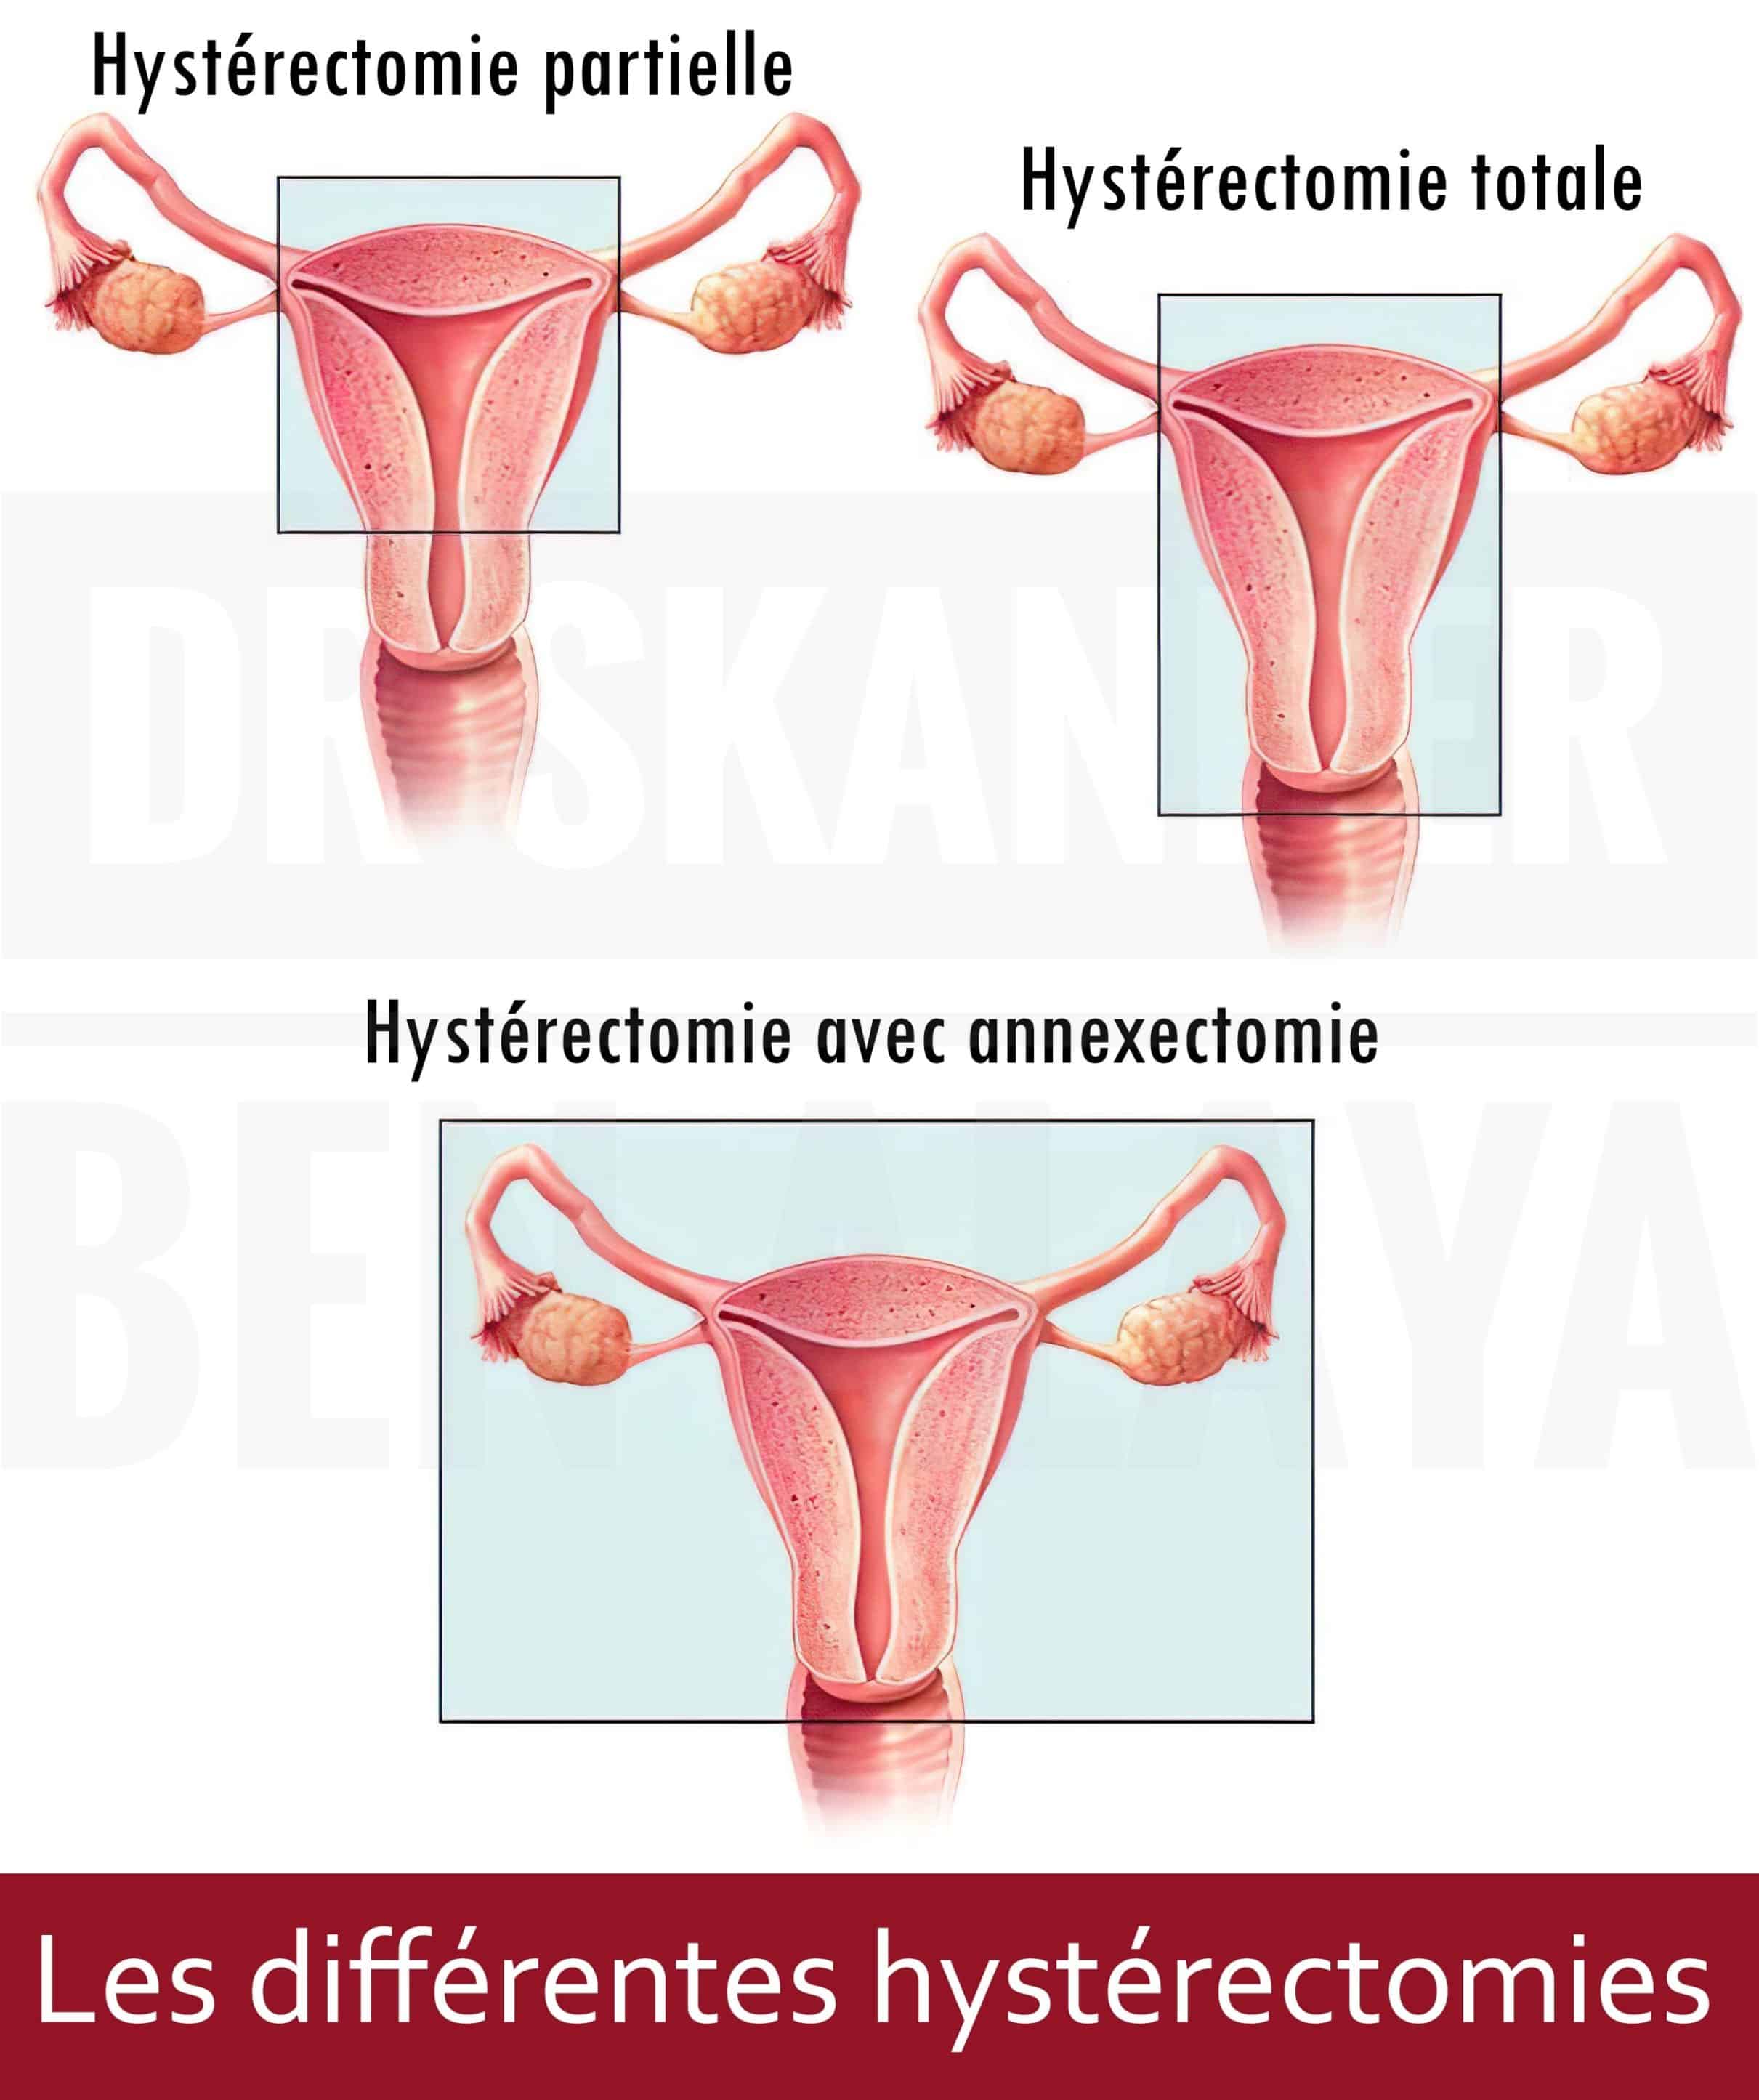 De nombreuses raisons peuvent amener un gynécologue à proposer une hystérectomie à sa patiente.